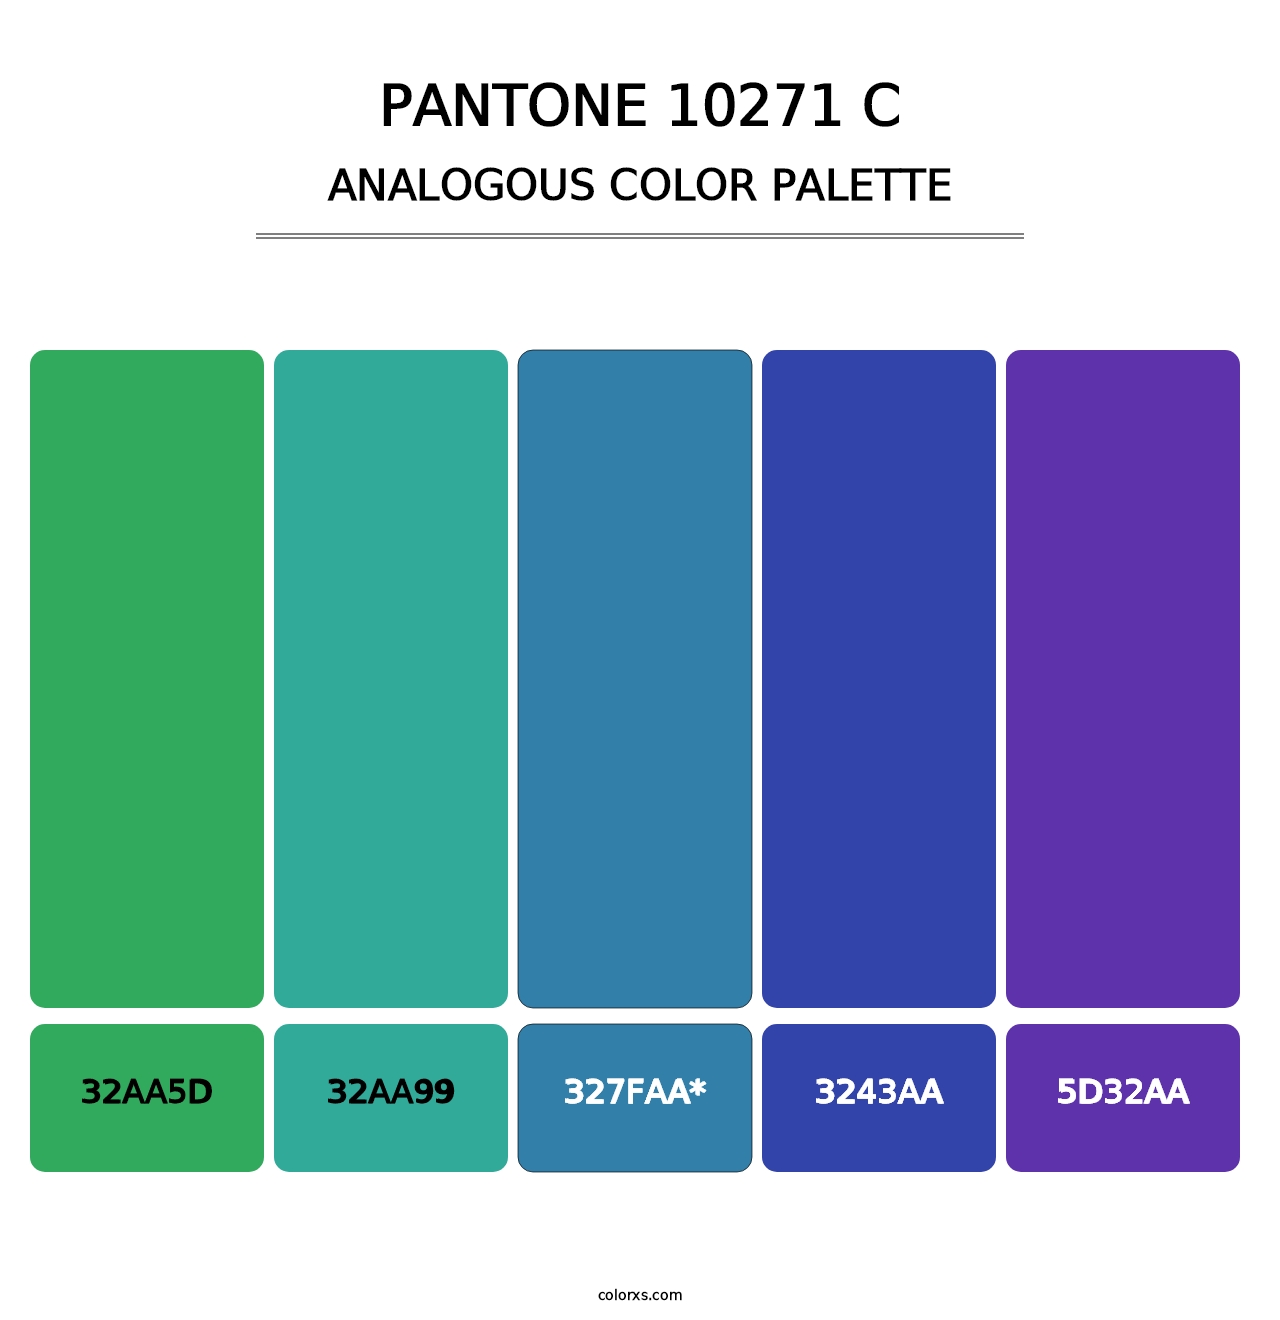 PANTONE 10271 C - Analogous Color Palette